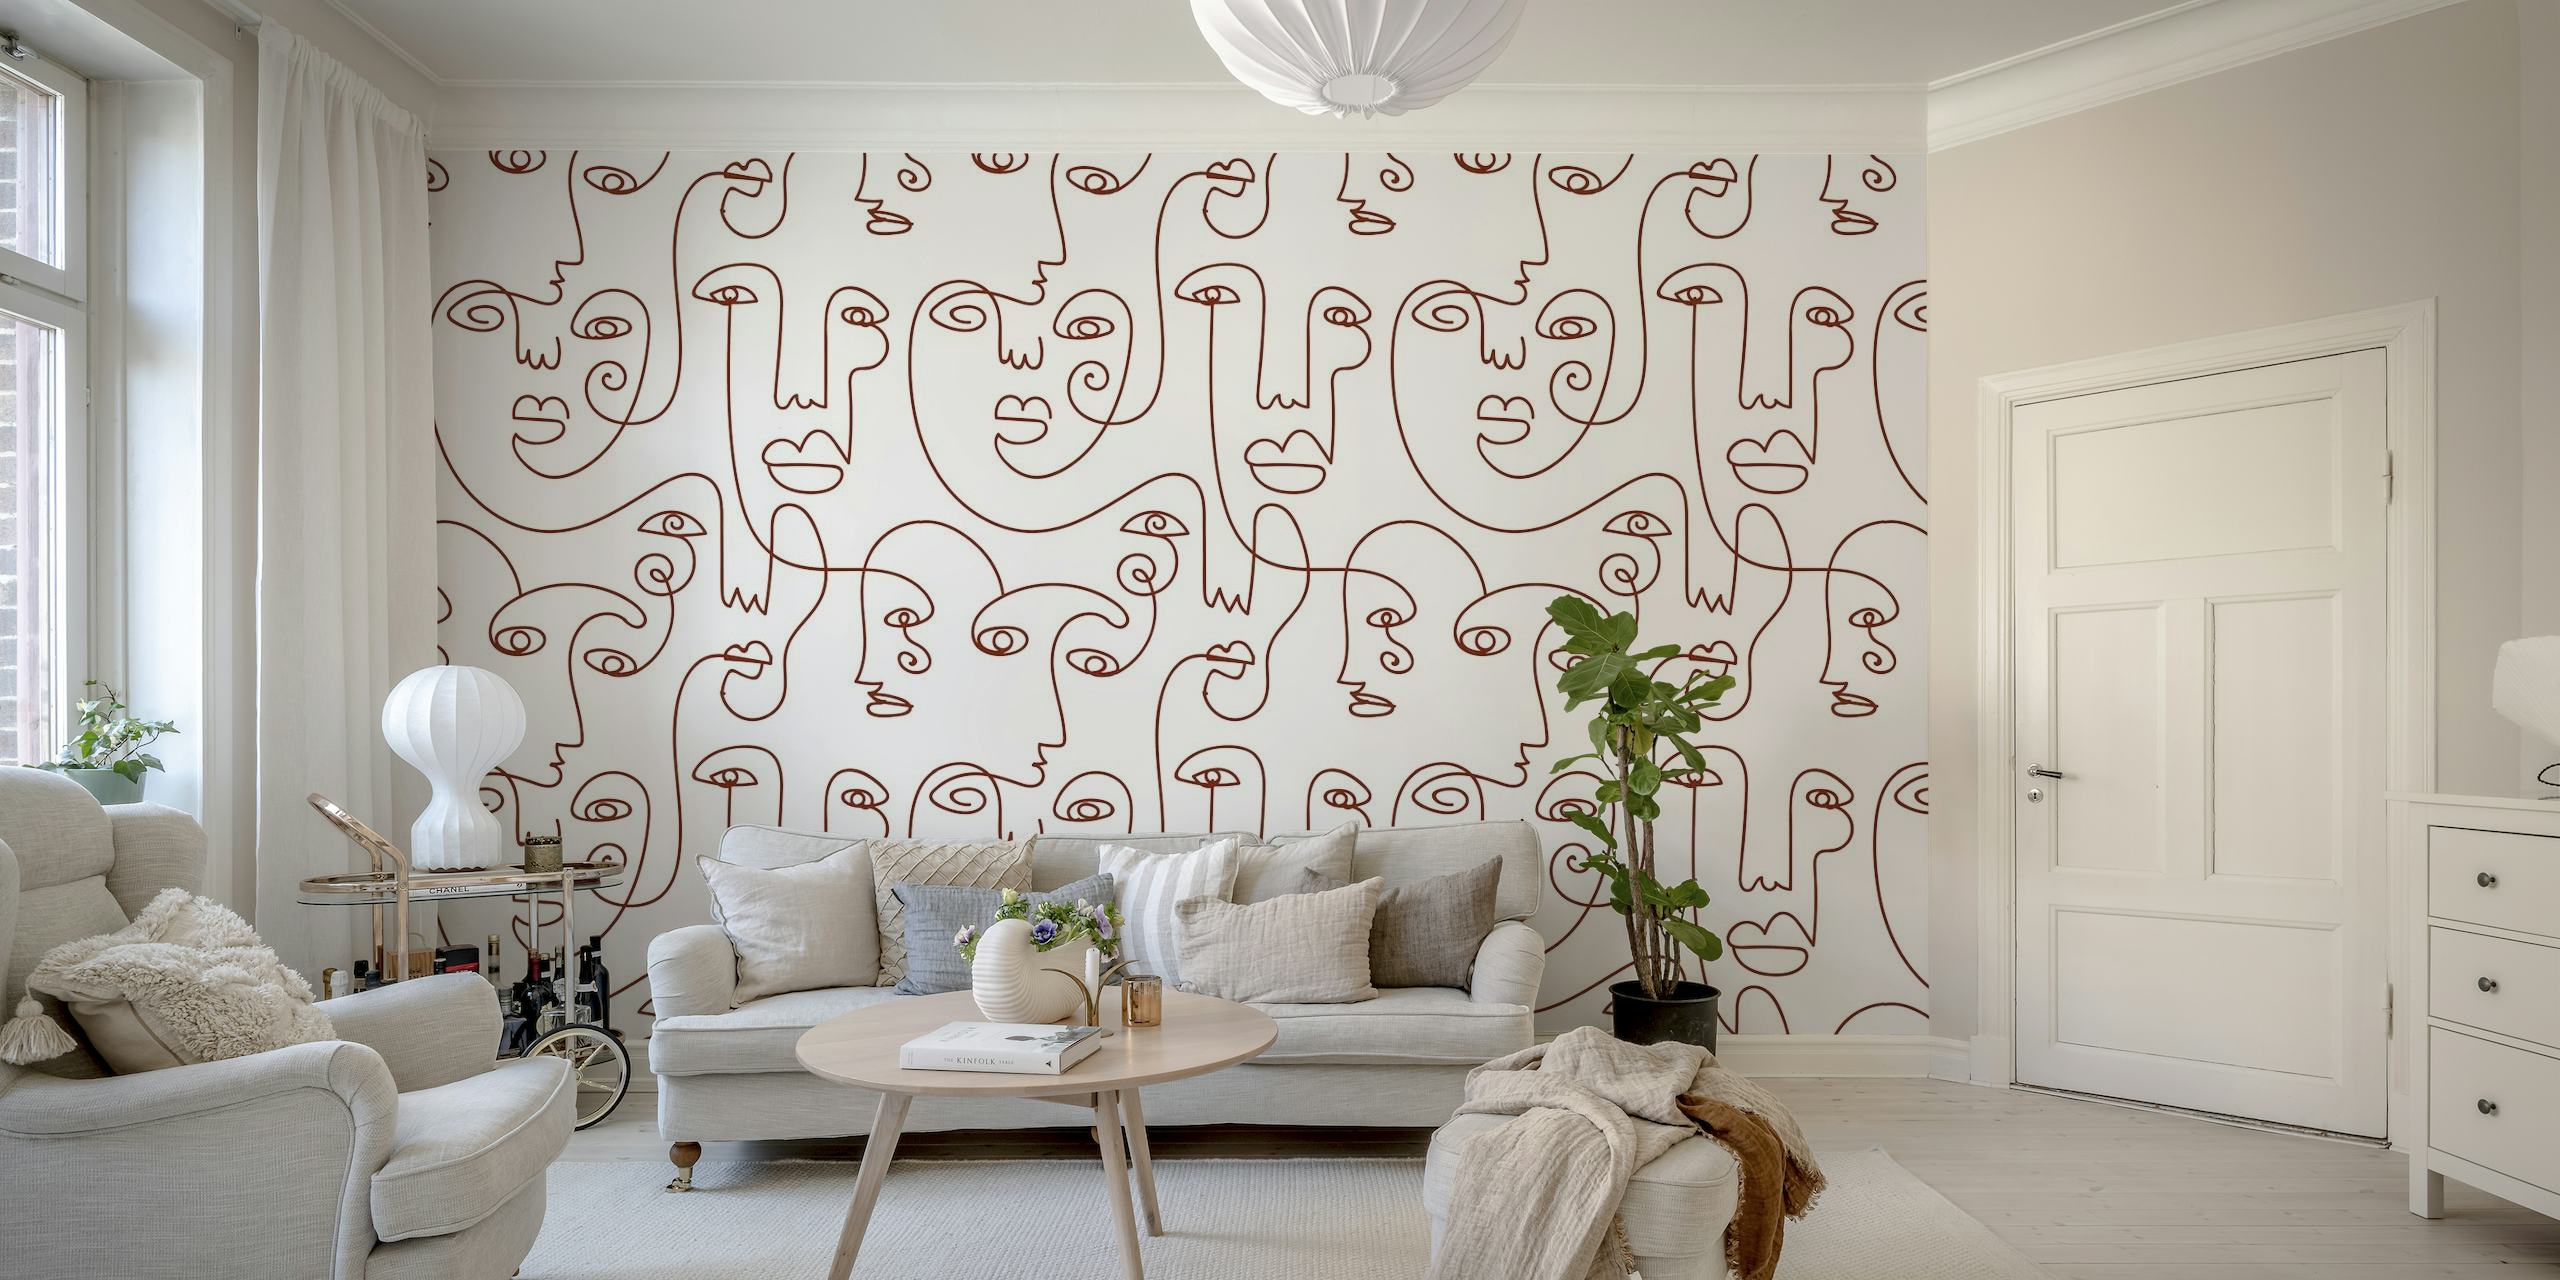 Apstraktni kontinuirani linijski crtež ženskih lica na zidnom zidnom zidu inspiriranom Picassom u smeđim tonovima.